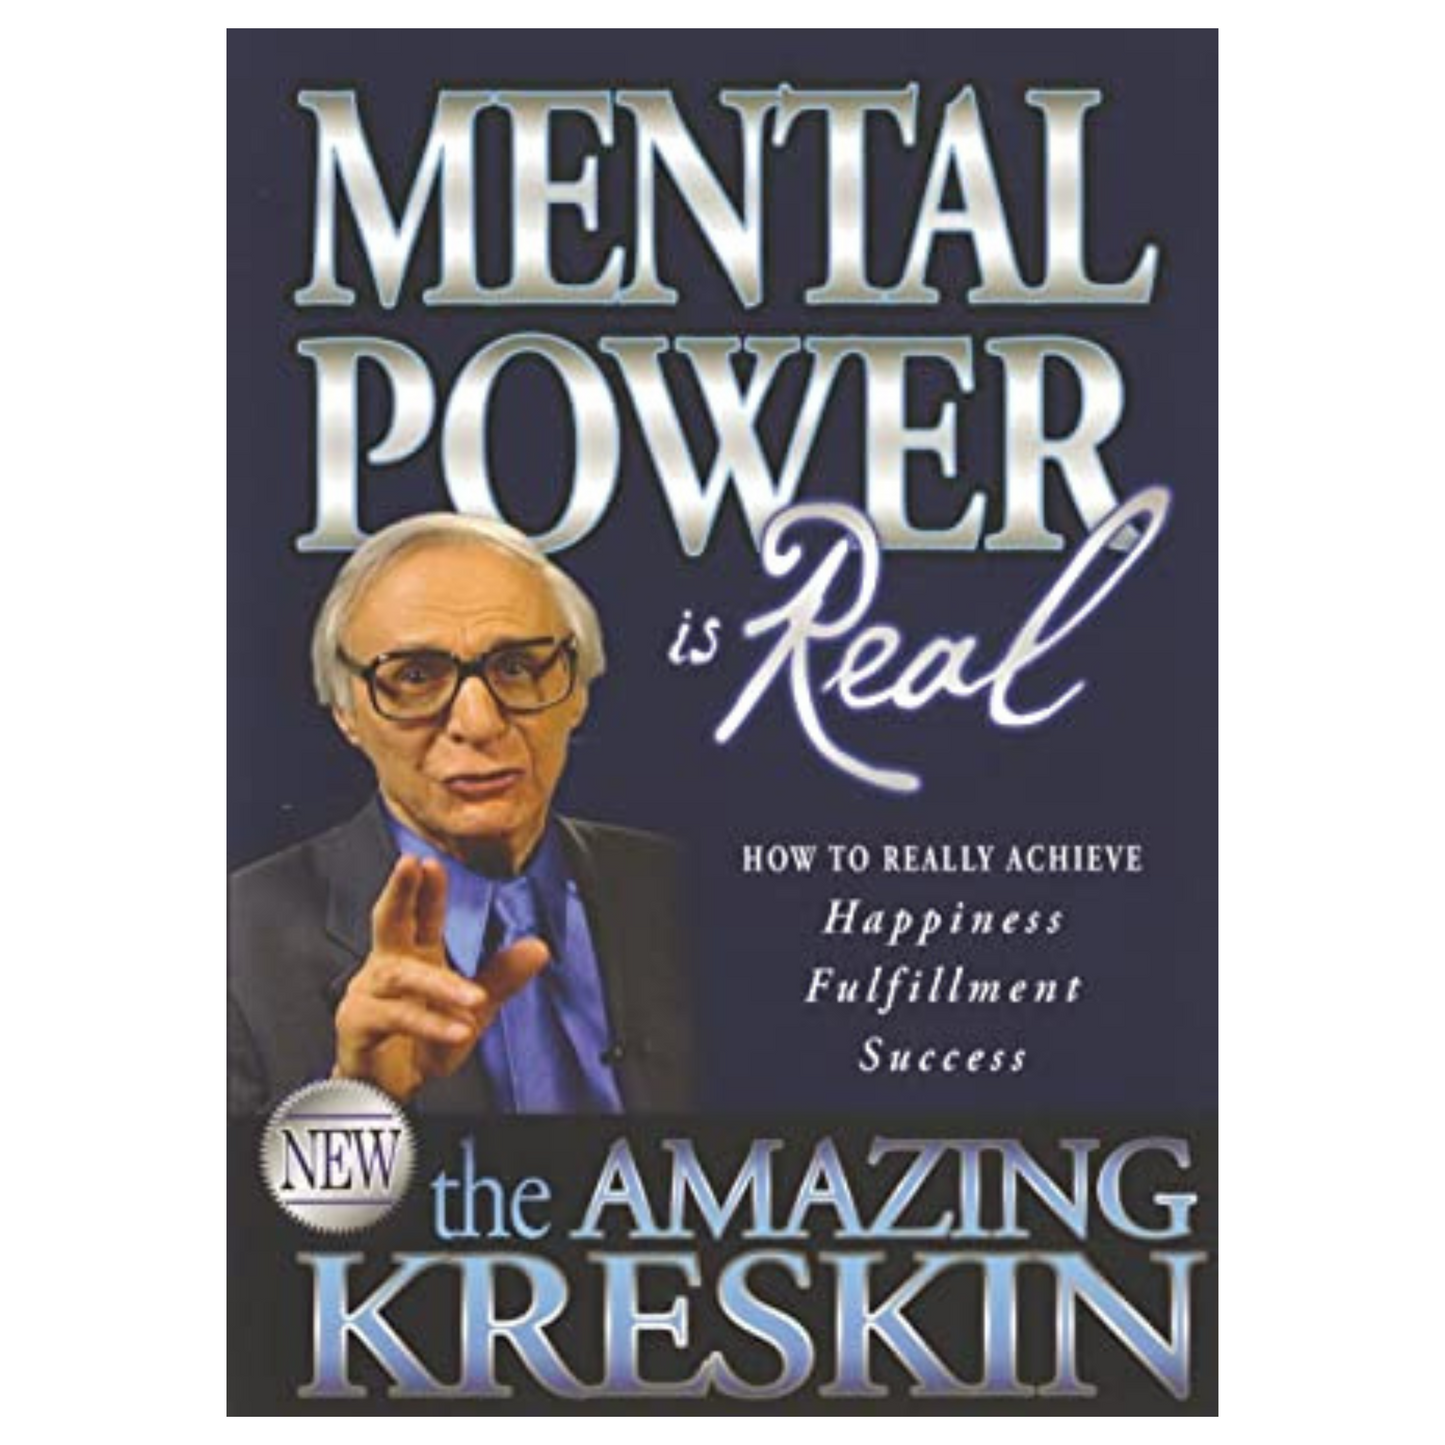 Mental Power Is Real - Amazing Kreskin Book